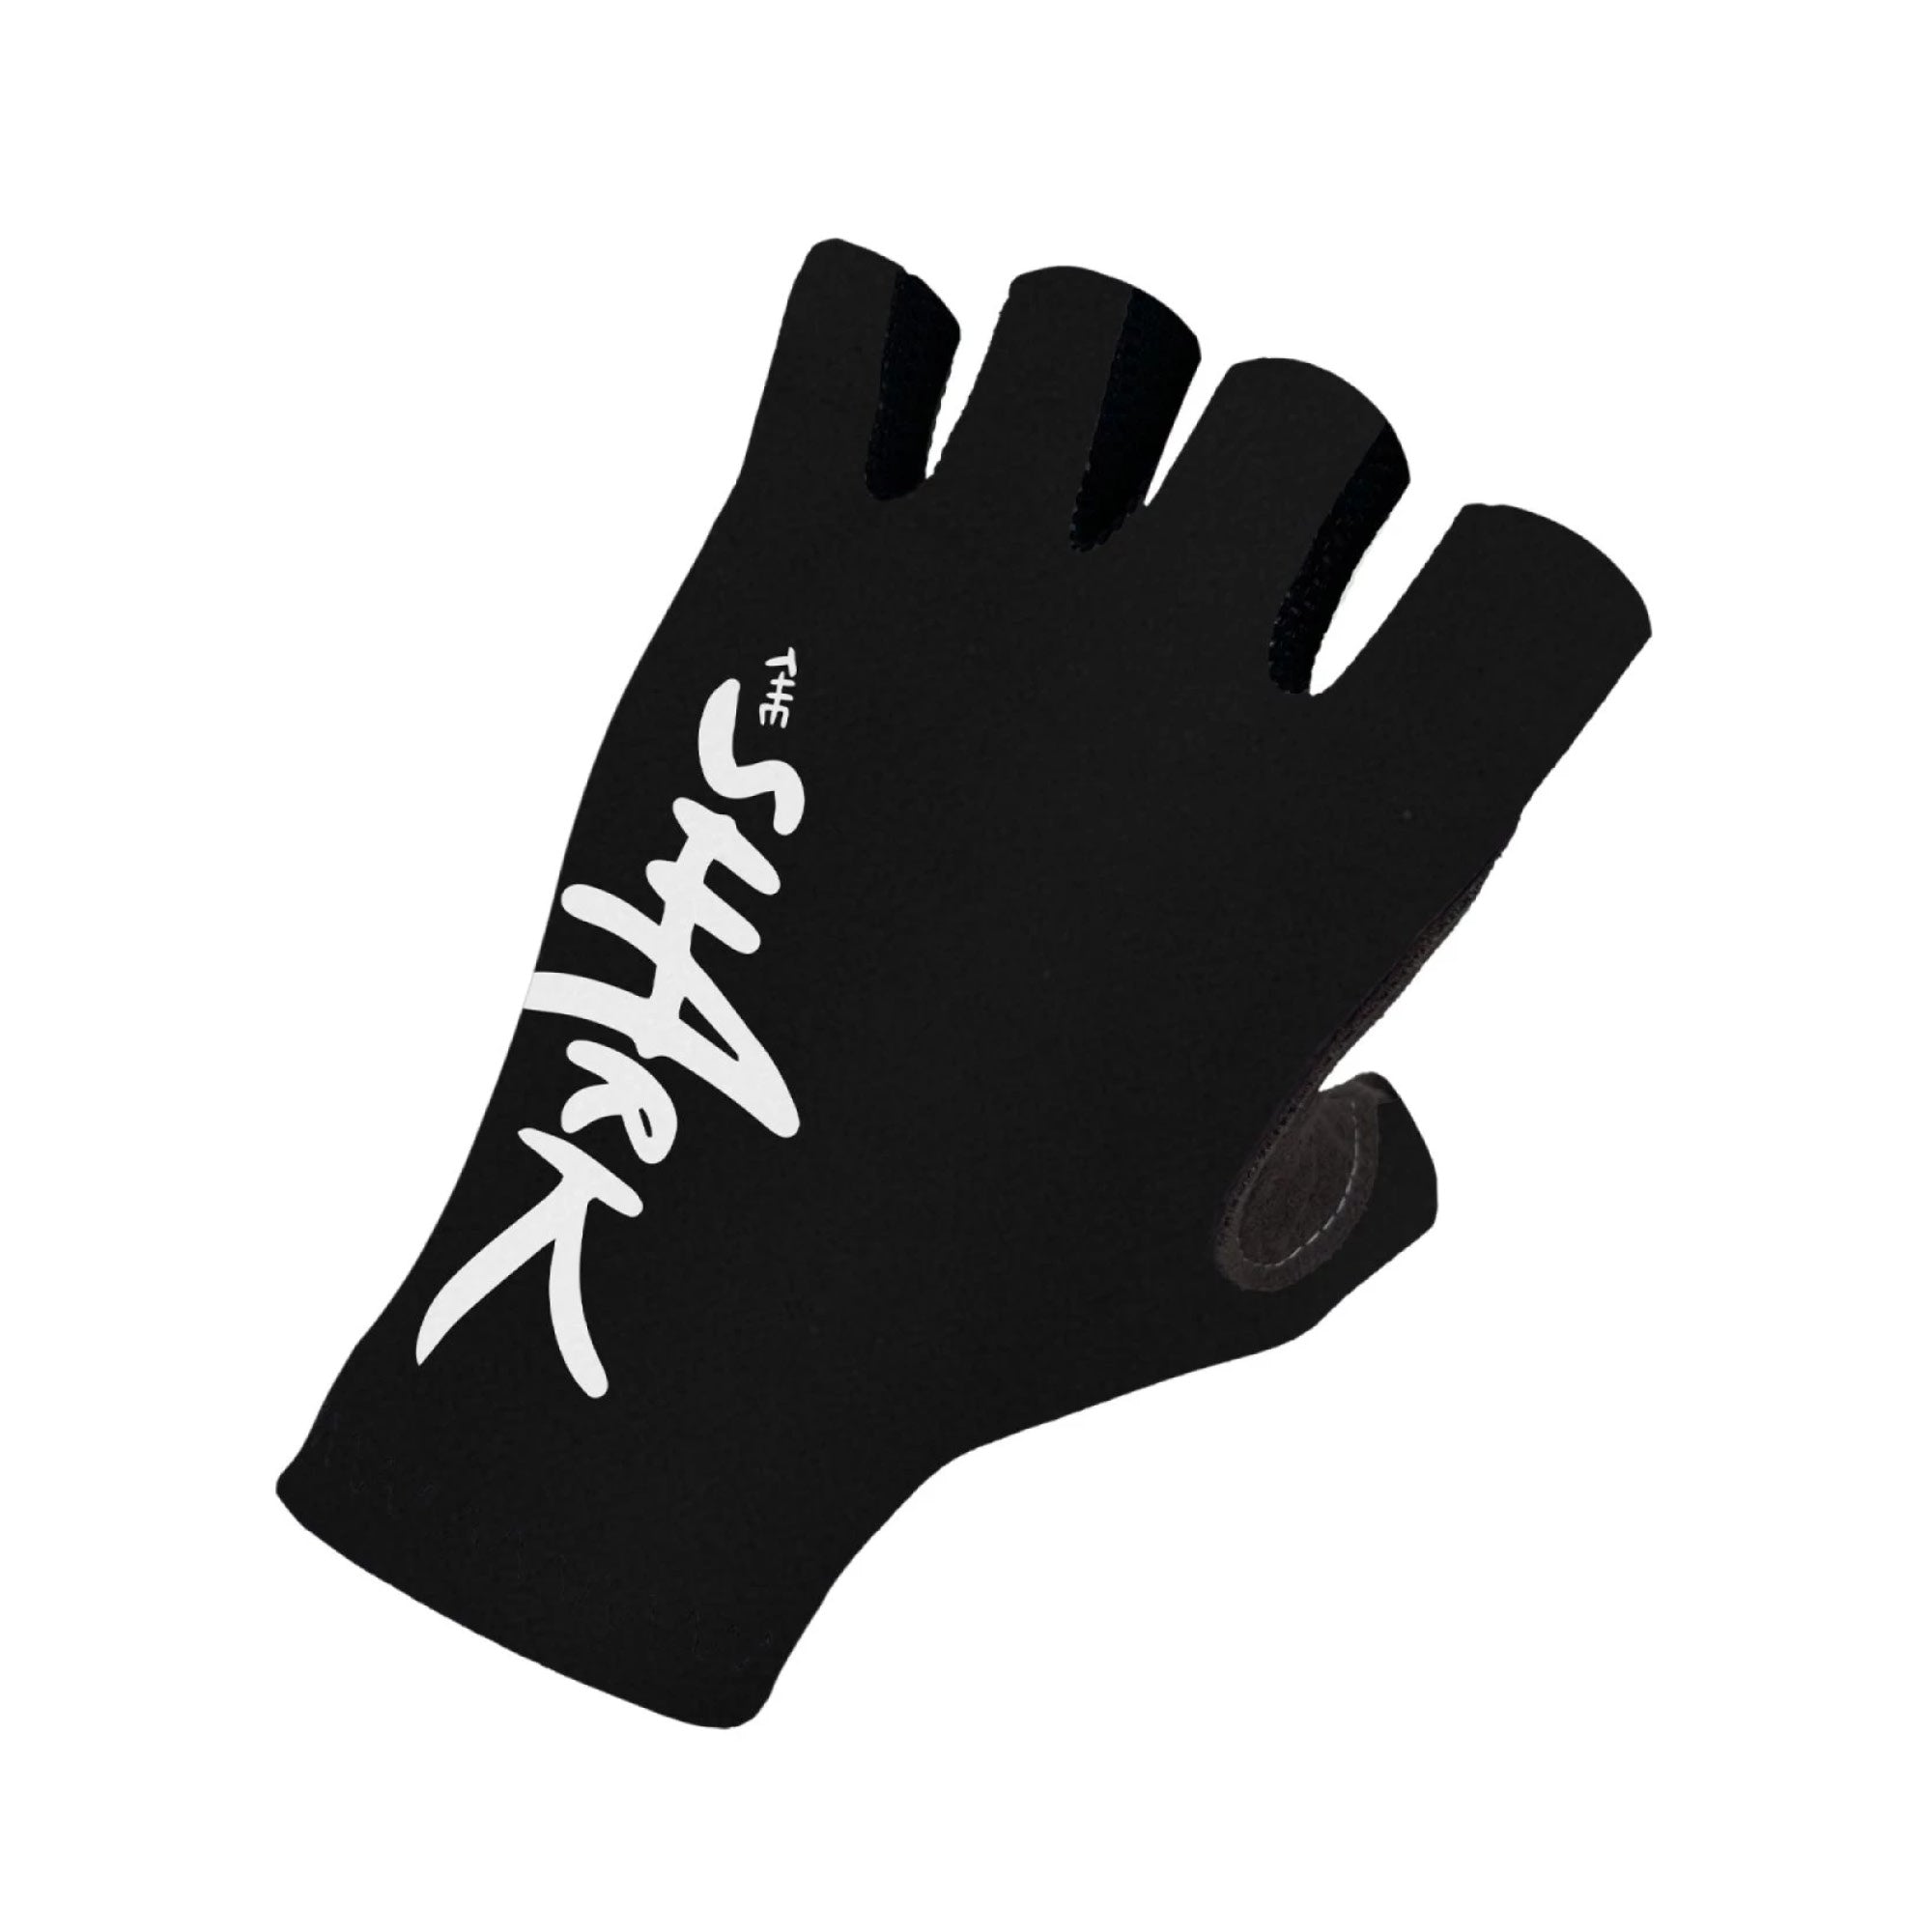 Nibali Shark Gloves